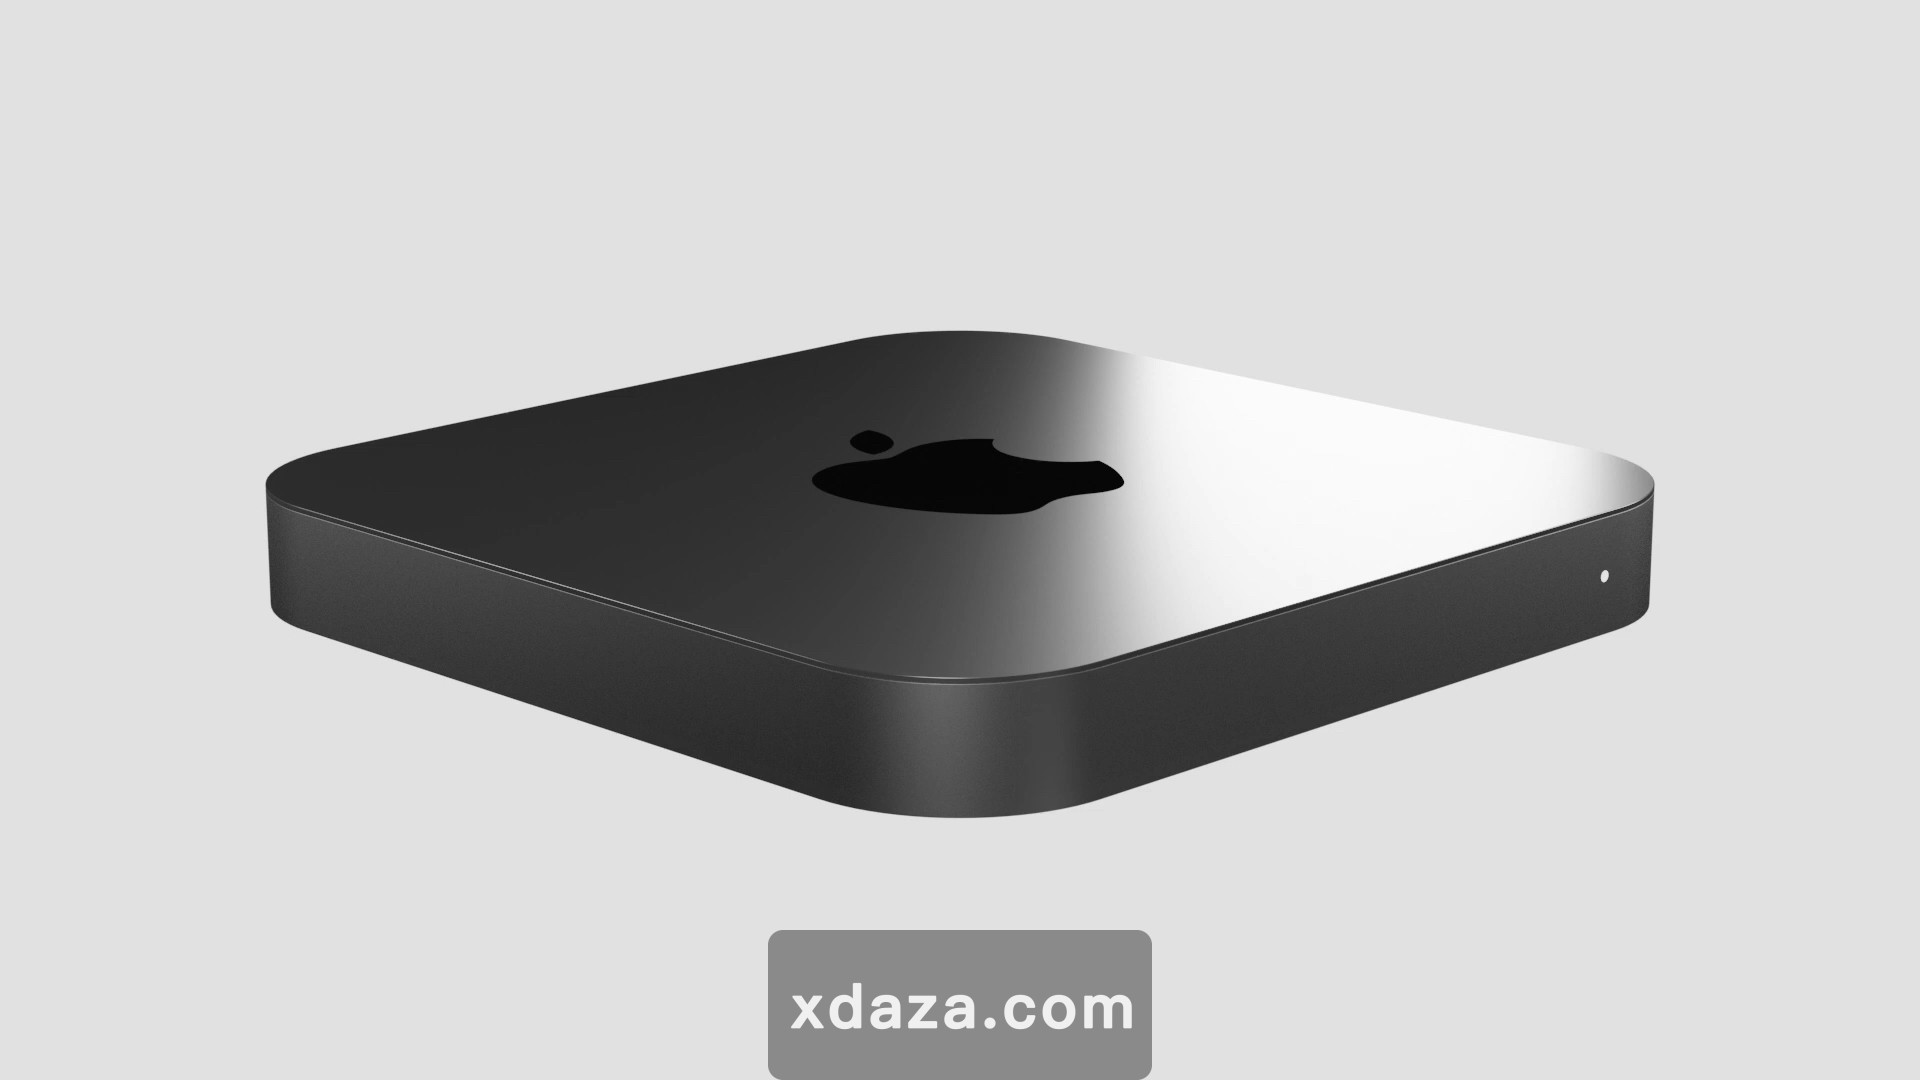 "M1X"芯片版Mac Mini即将推出：可能是11年来第一次，外观设计大更新？